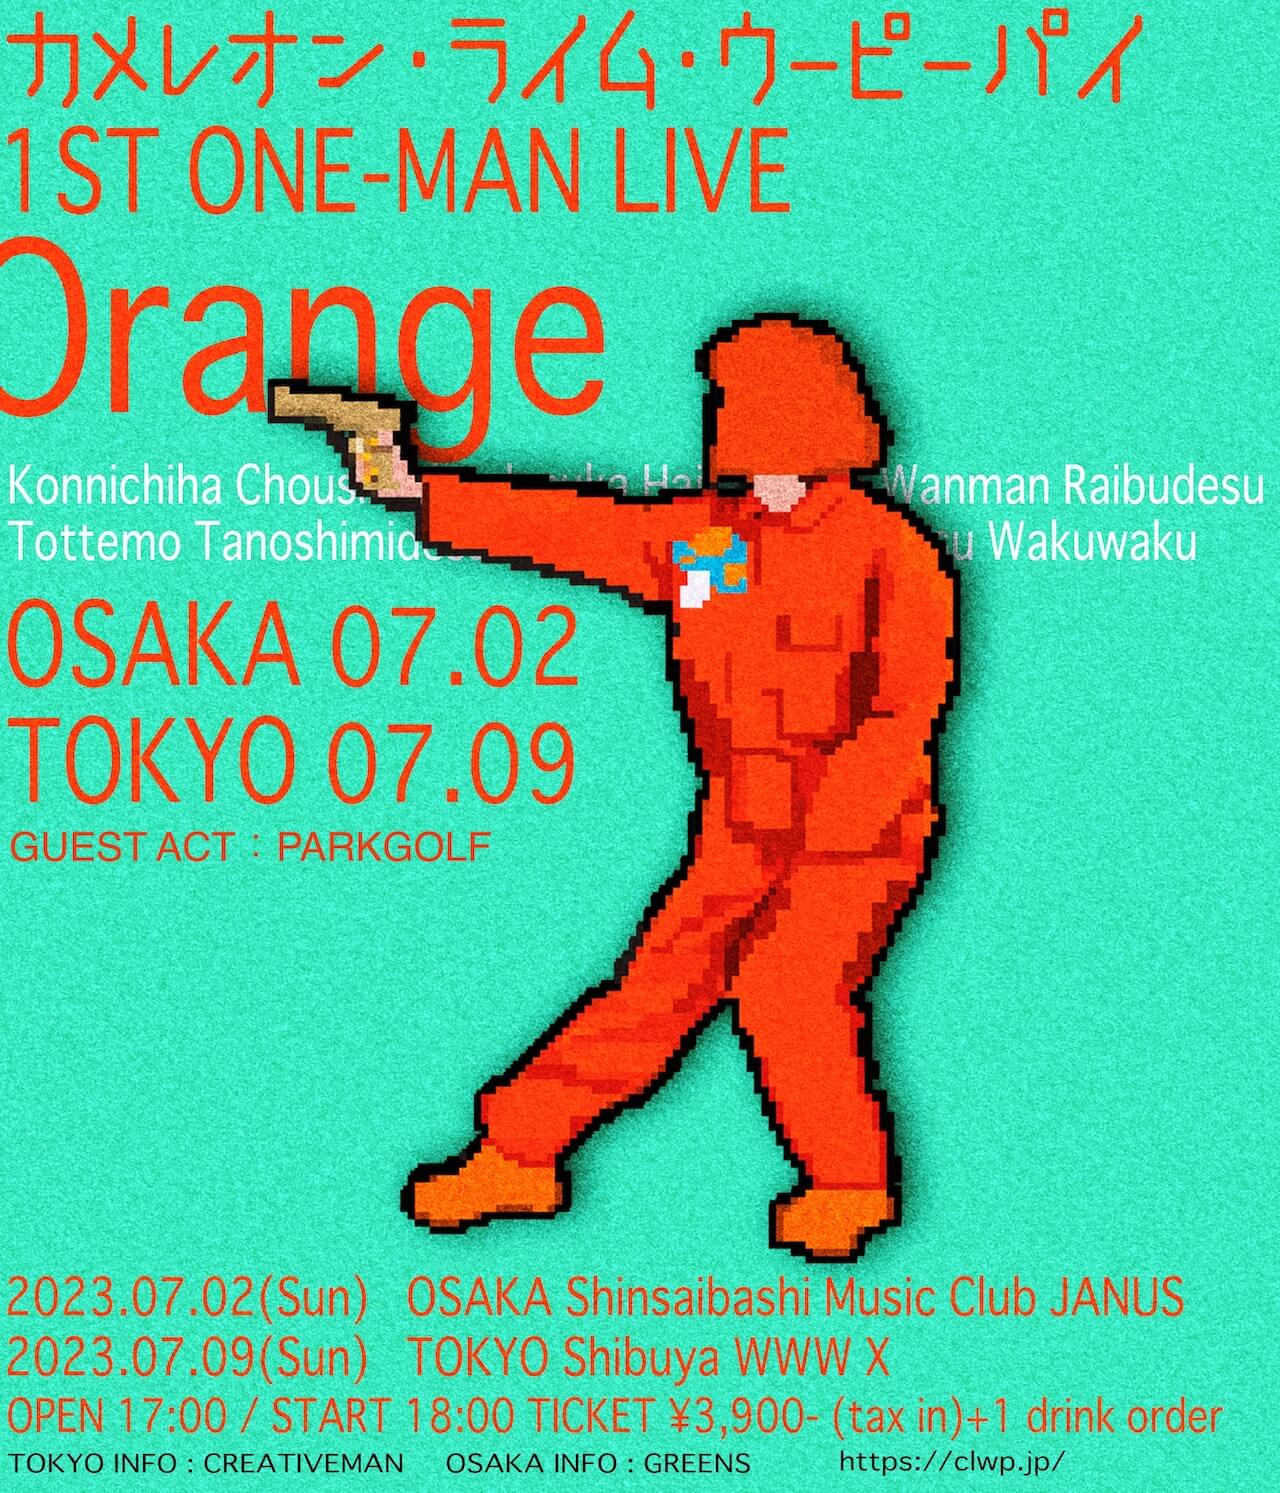 オレンジに塗れた一夜──カメレオン・ライム・ウーピーパイ＜1ST ONE-MAN LIVE “Orange”＞東京公演をフォトレポート column230628-clwp-3